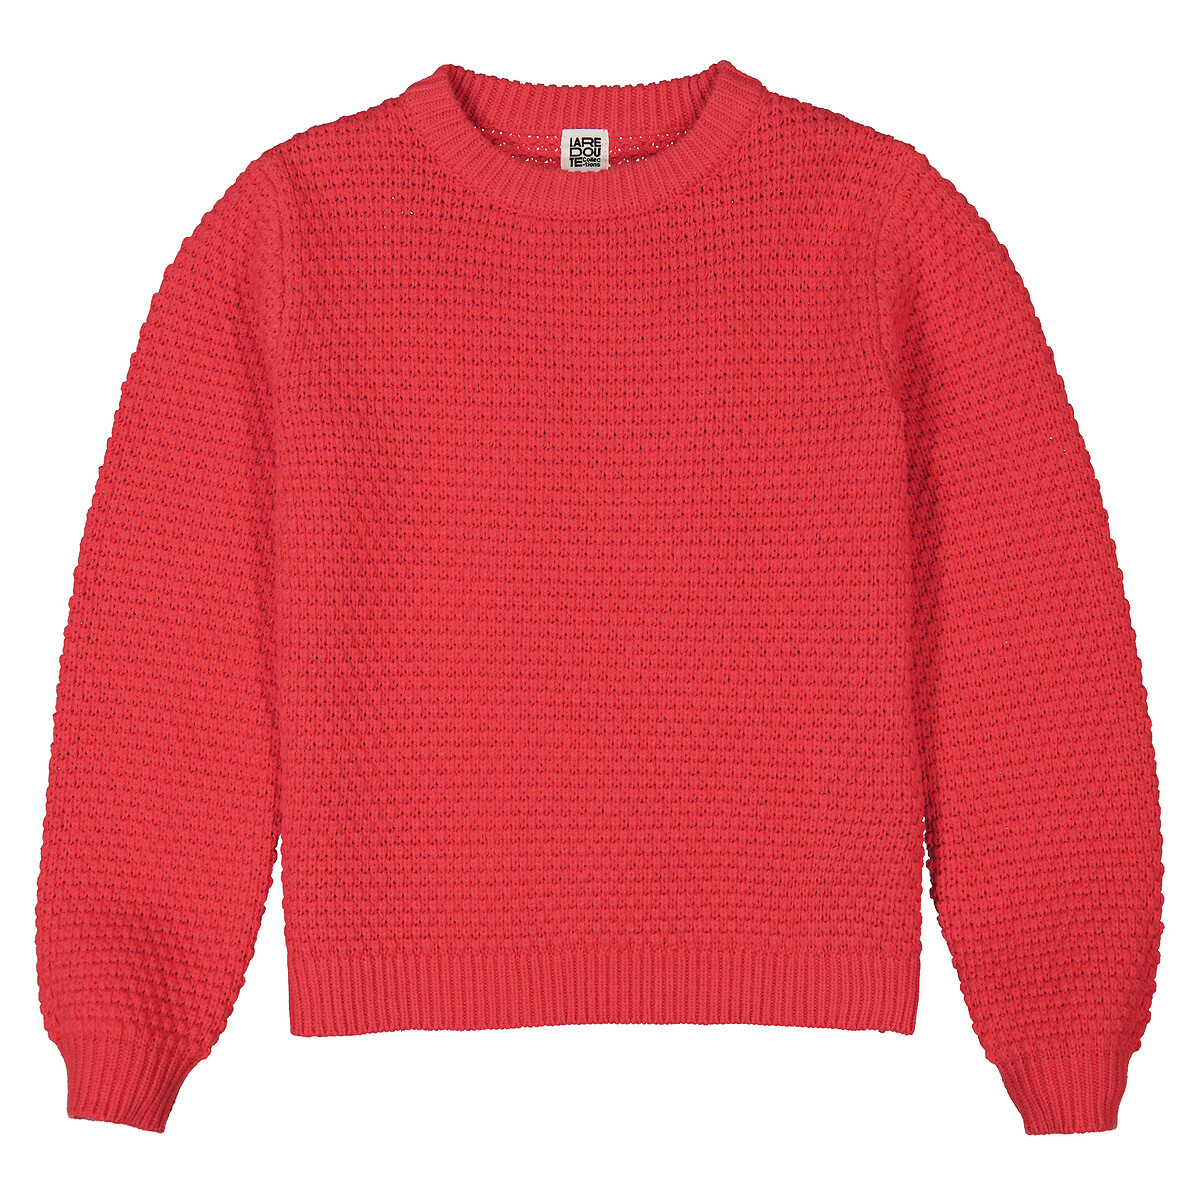 Пуловер с круглым вырезом из оригинального объемного трикотажа  12 лет -150 см красный LaRedoute, размер 12 лет -150 см - фото 3